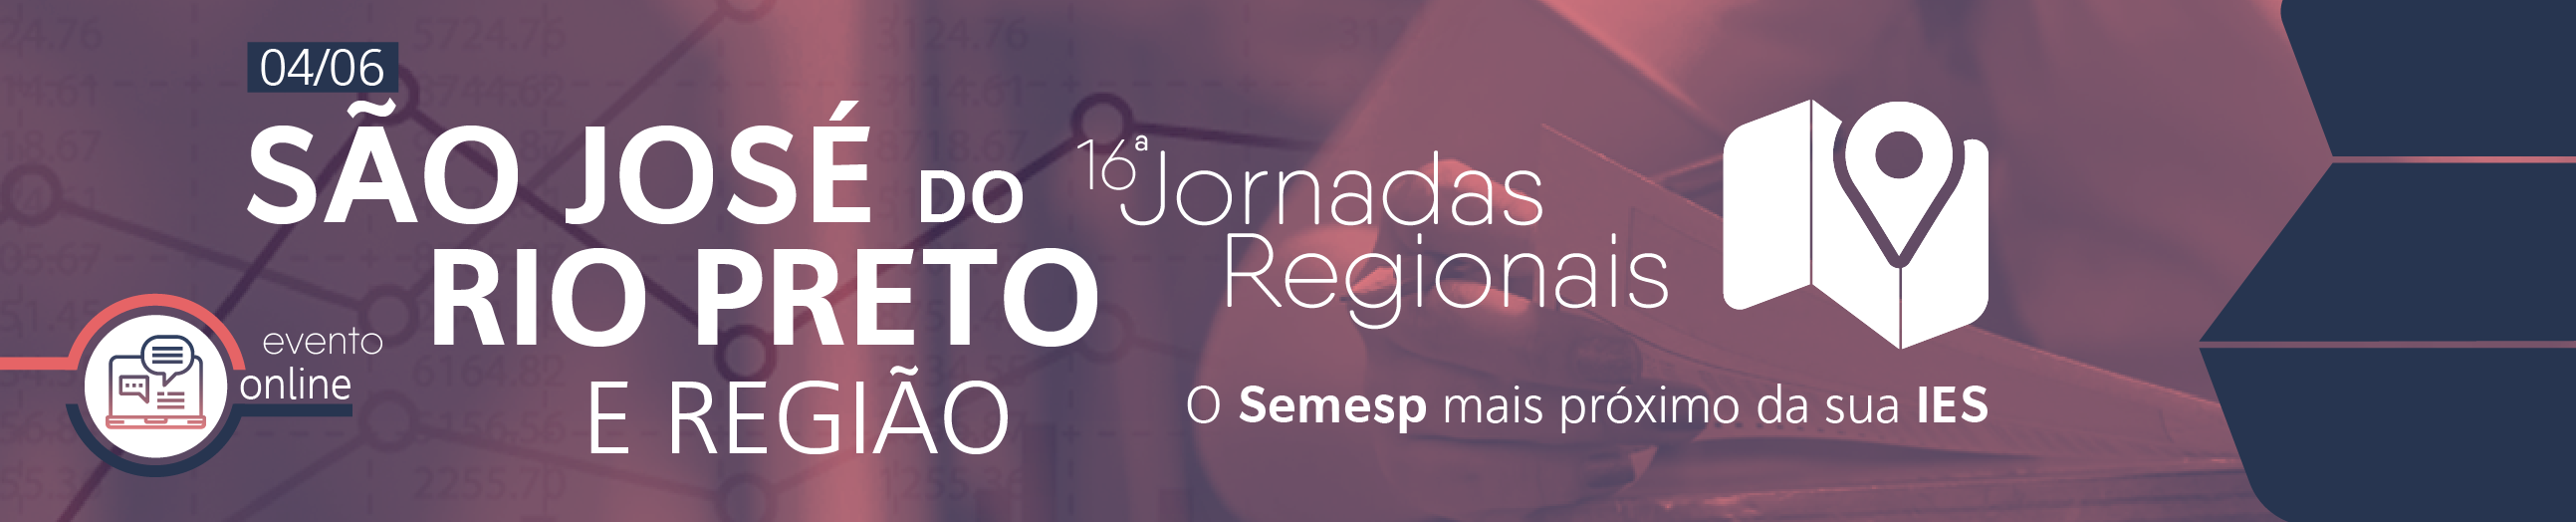 Jornadas Regionais | 16ª Edição - São José do Rio Preto